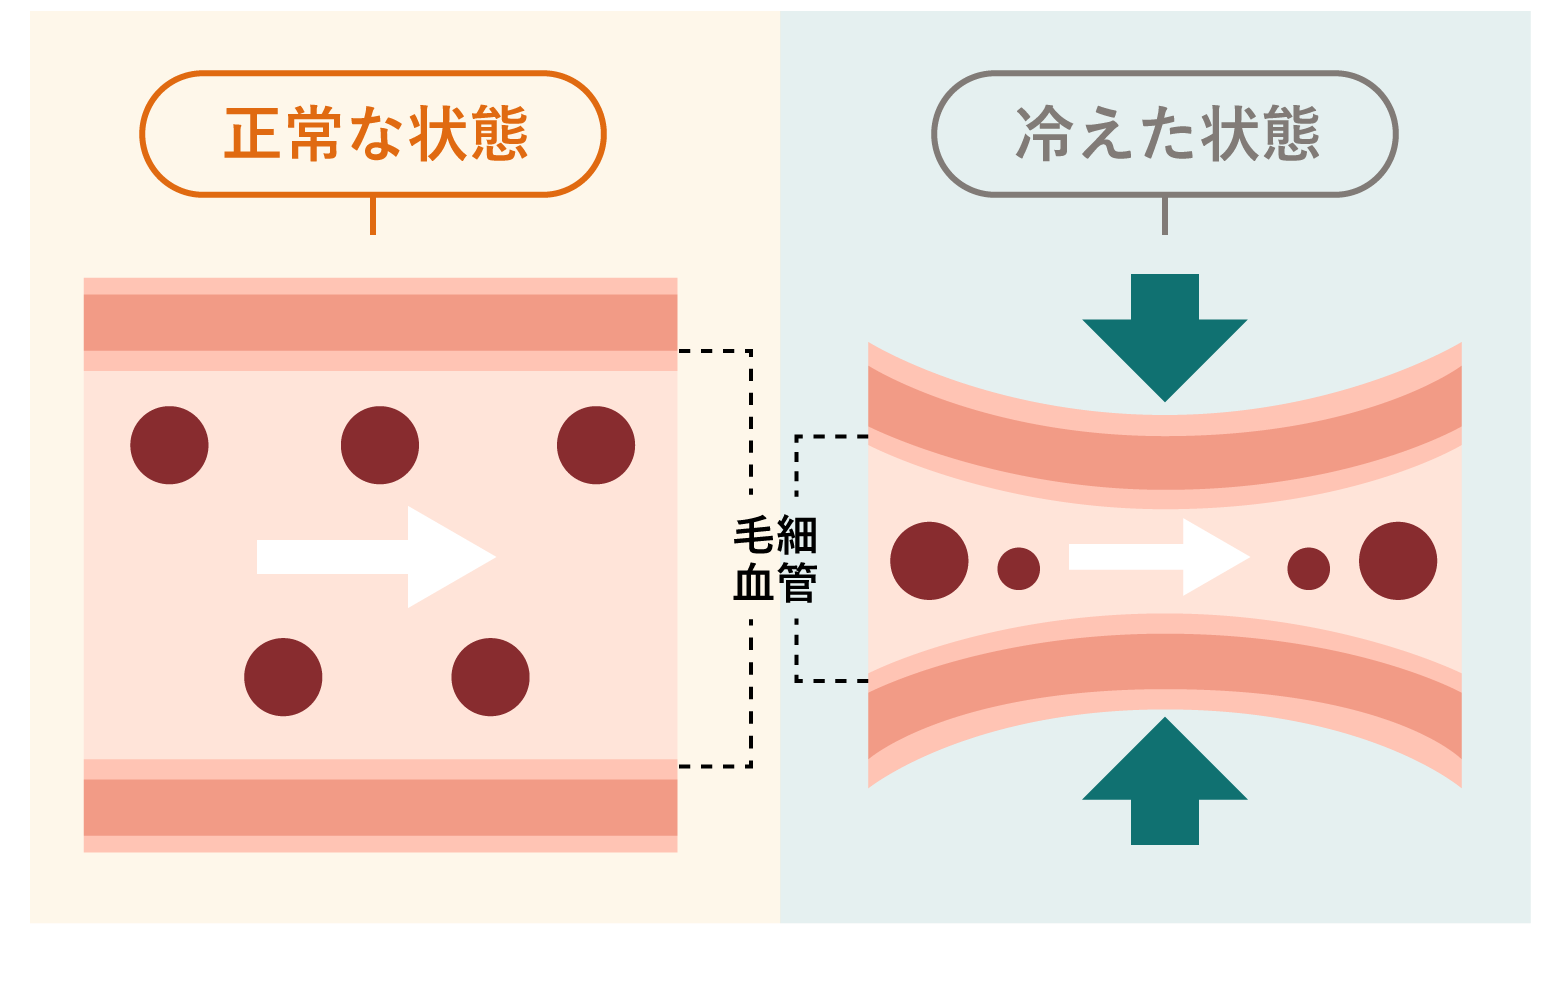 正常な状態と冷えた状態の血管の断面図